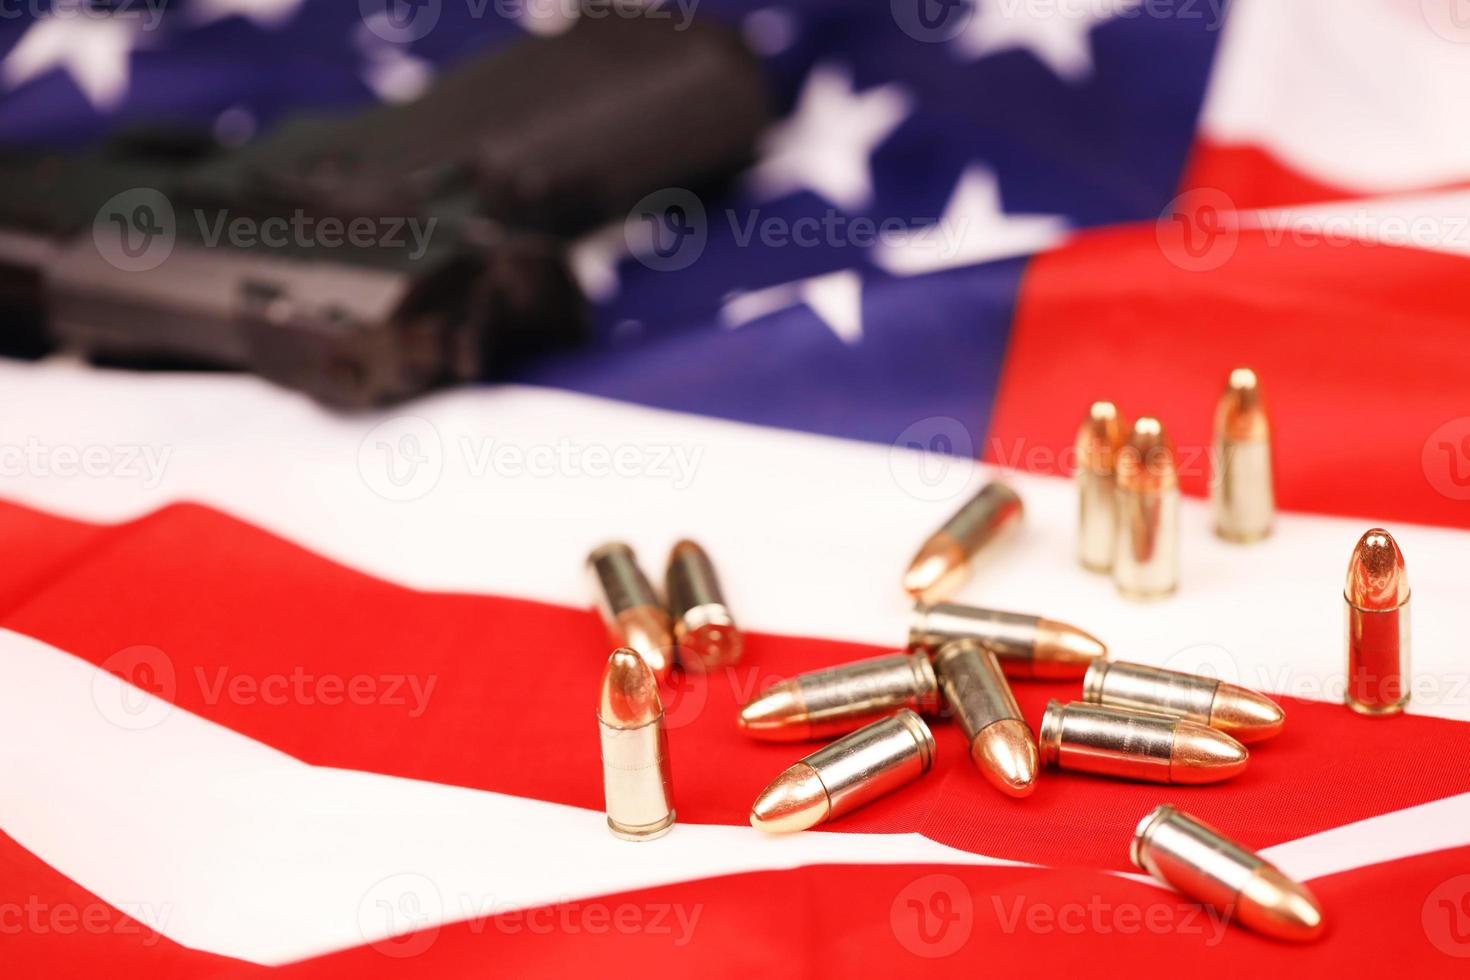 muitas balas amarelas de 9 mm e arma na bandeira dos estados unidos. conceito de tráfico de armas no território dos eua ou campo de tiro foto